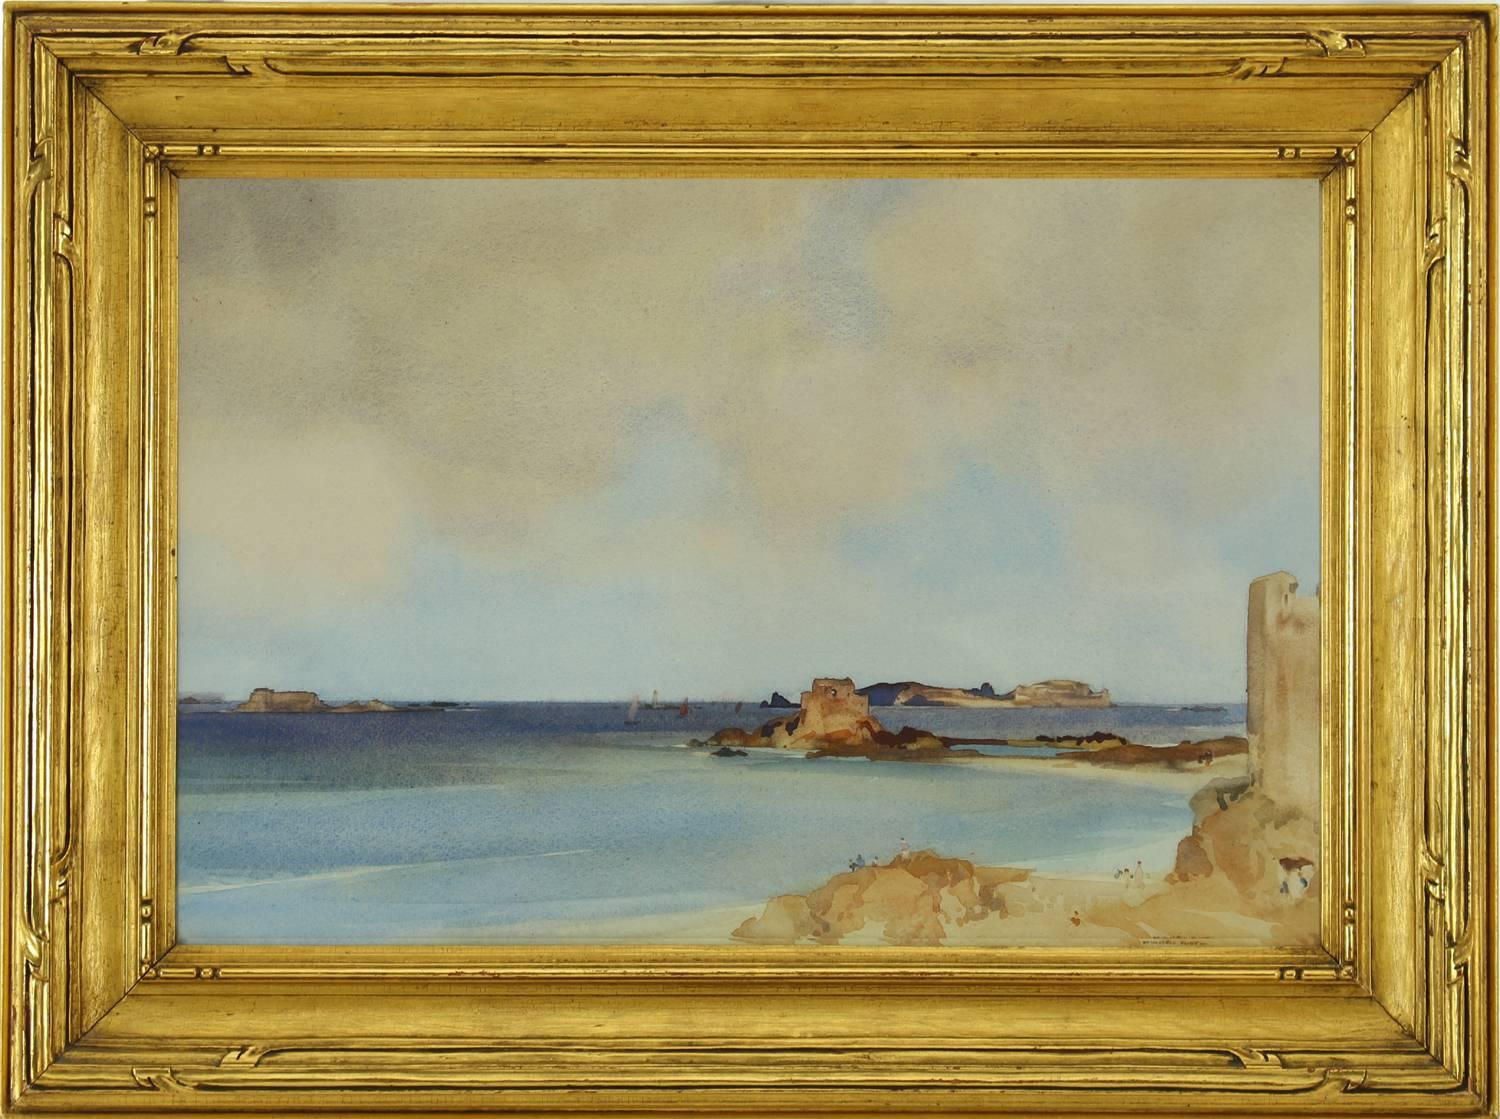 The bay of Islands – Art von William Russell Flint